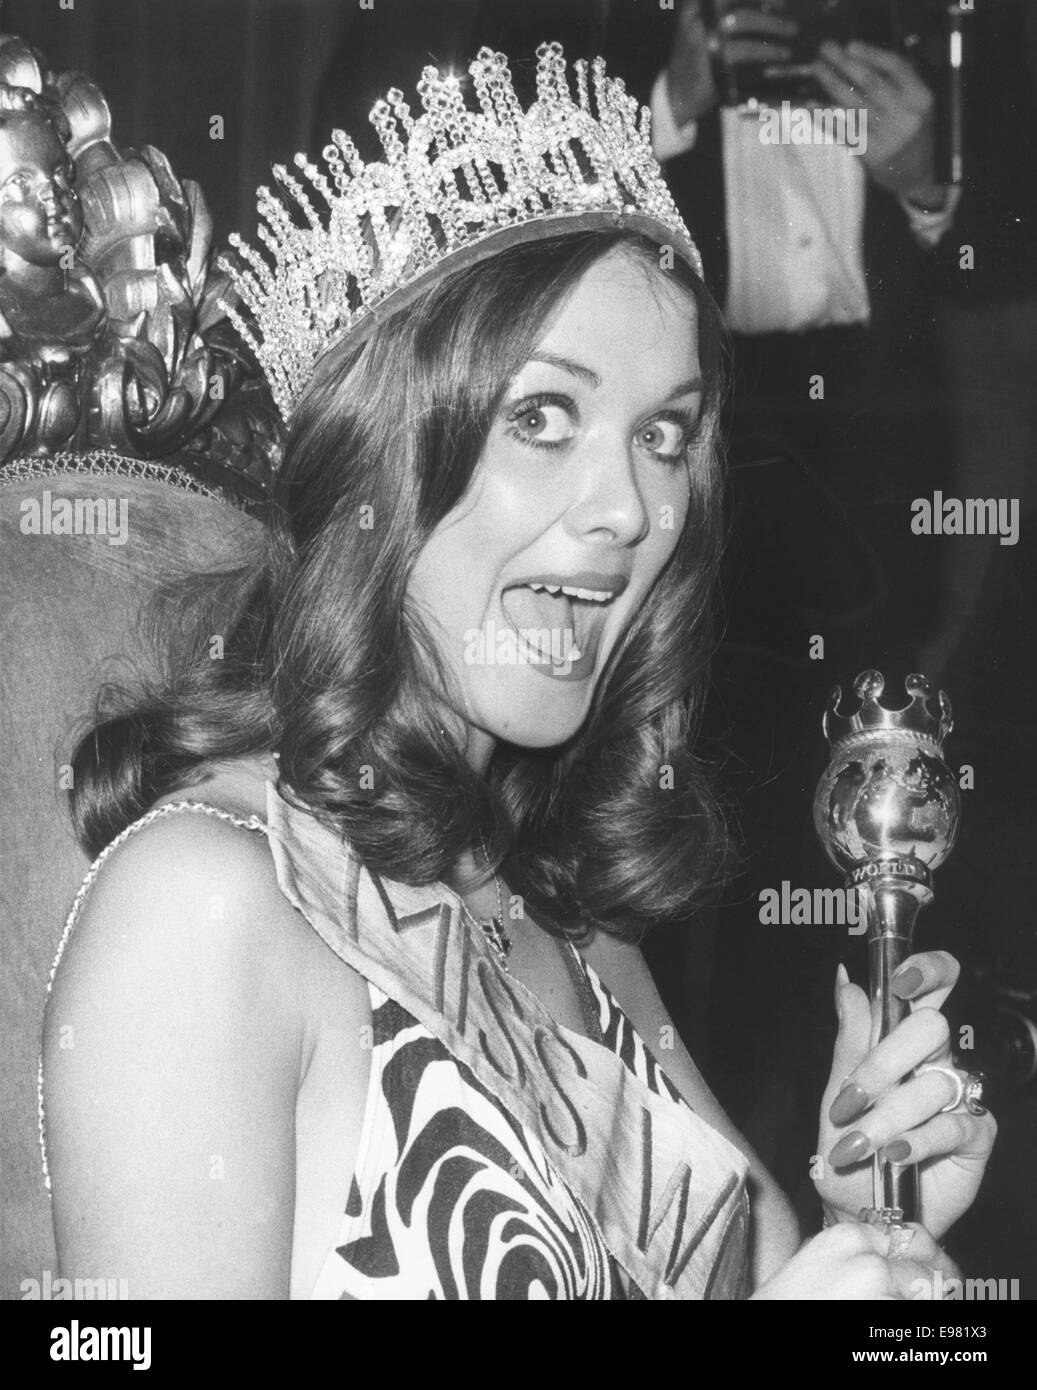 Nov 22, 1974 - Londres, Angleterre, Royaume-Uni - HELEN MORGAN, 22 ans originaire de Barry, Glamorgan, Pays de Galles et Miss Royaume-uni, montre son plaisir tout en tenant le sceptre et portant sa couronne après avoir remporté le titre de Miss Monde au Royal Albert Hall de Londres. Morgan devient le premier gagnant de démissionner, et le second de ne pas terminer son règne en tant que Miss Monde. Elle a été forcée de démissionner quatre jours après sa victoire à la découverte qu'elle avait un fils de 18 mois. Bien que cela n'a pas violé les règles de concurrence (qui stipule seulement que les participants doivent être célibataire), elle a été faite pour resig Banque D'Images